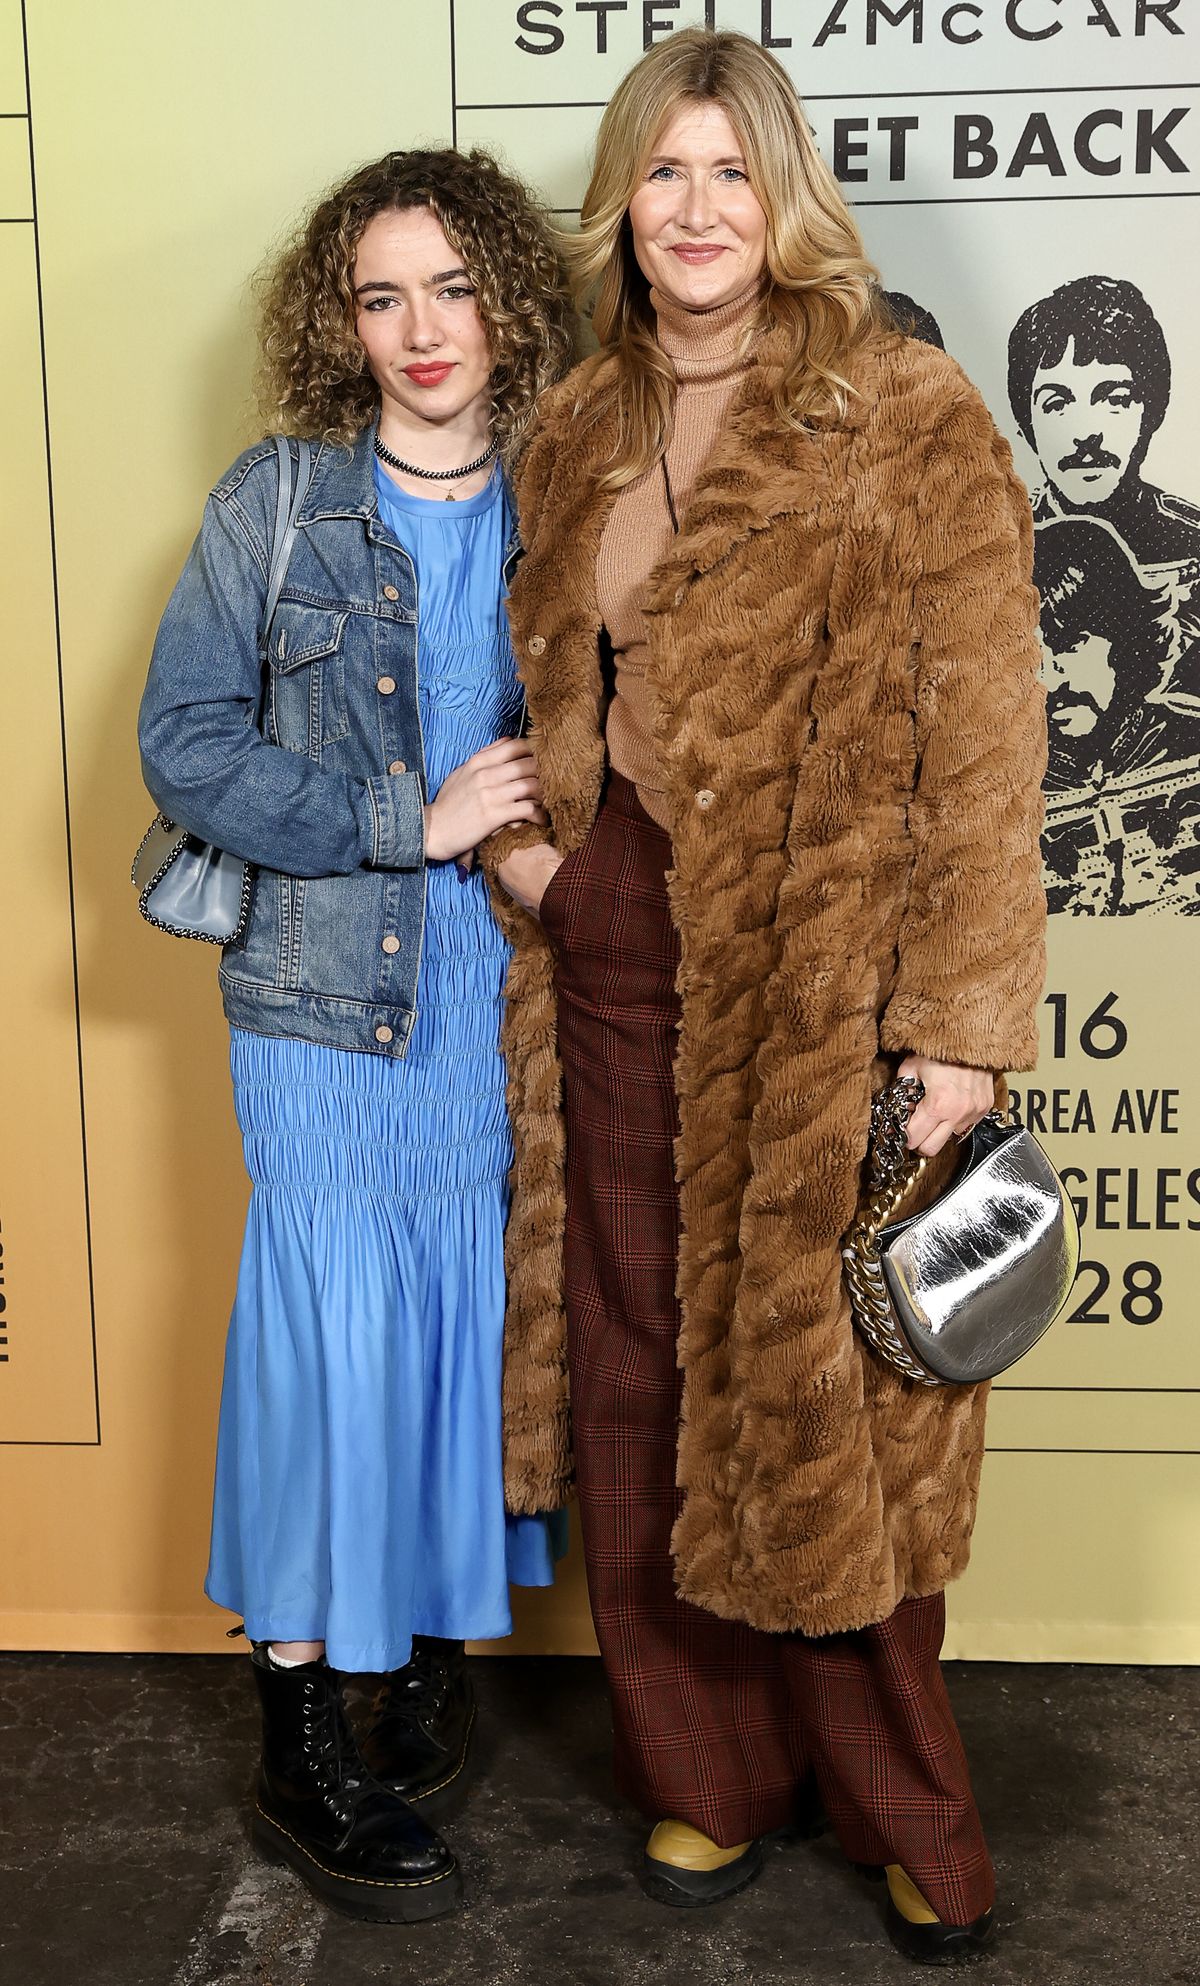 Лора Дерн с дочерью Джайей Харпер на шоу капсульной коллекции Stella McCartney «Get Back»